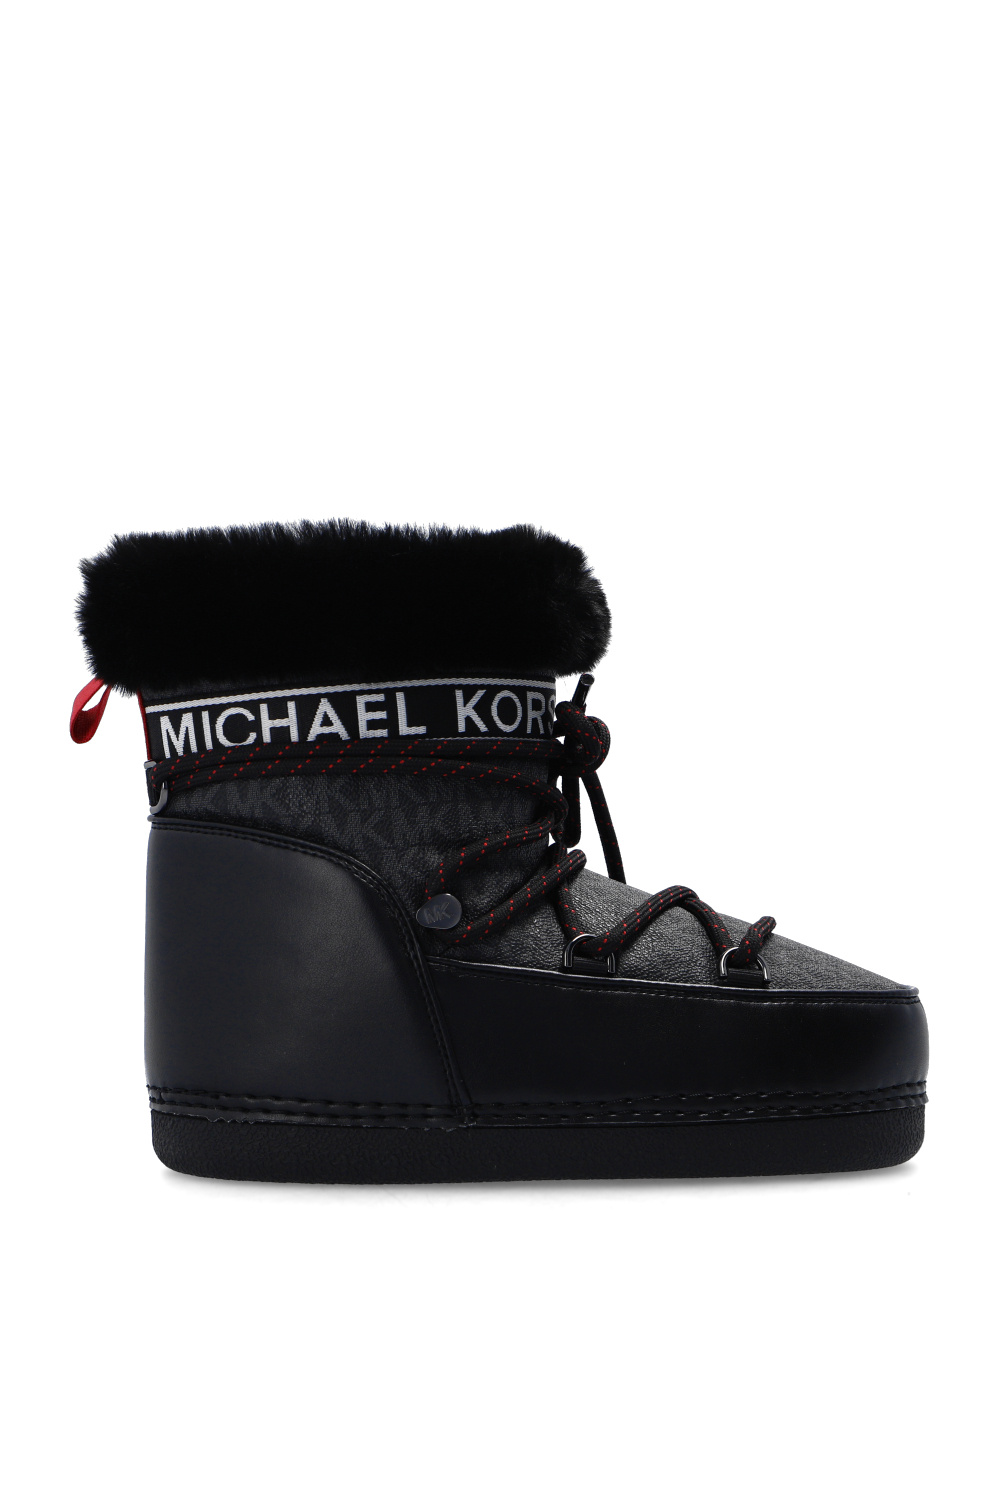 IetpShops Canada - 'Zelda' snow boots Michael Michael Kors - Descubre los lanzamientos Sneakers más hot semana